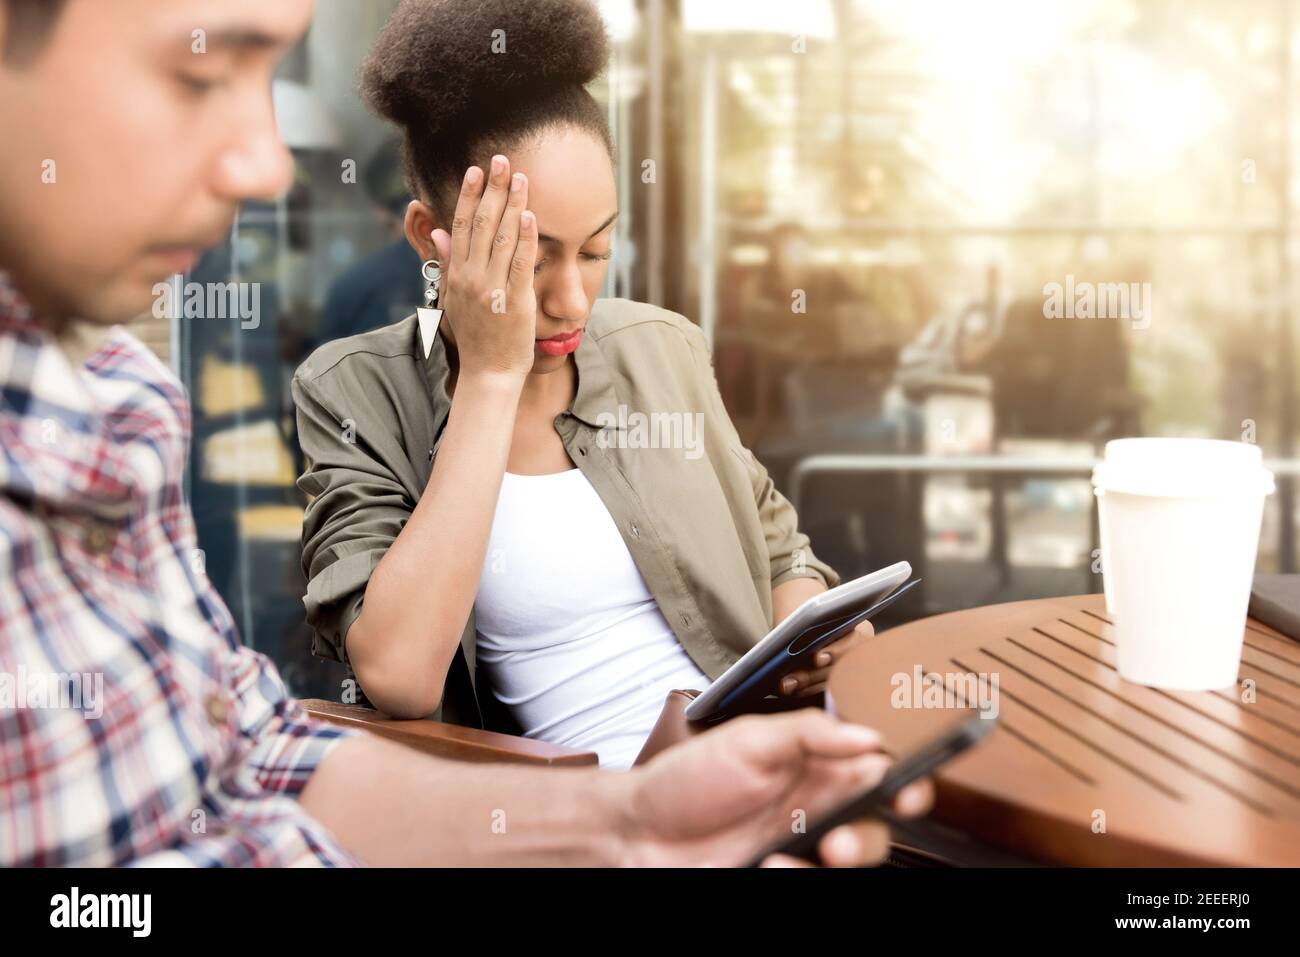 Le persone si concentrano seriamente sull'utilizzo dello smartphone mentre si siede al caffè negozio - concetto di dipendenza dai social media Foto Stock